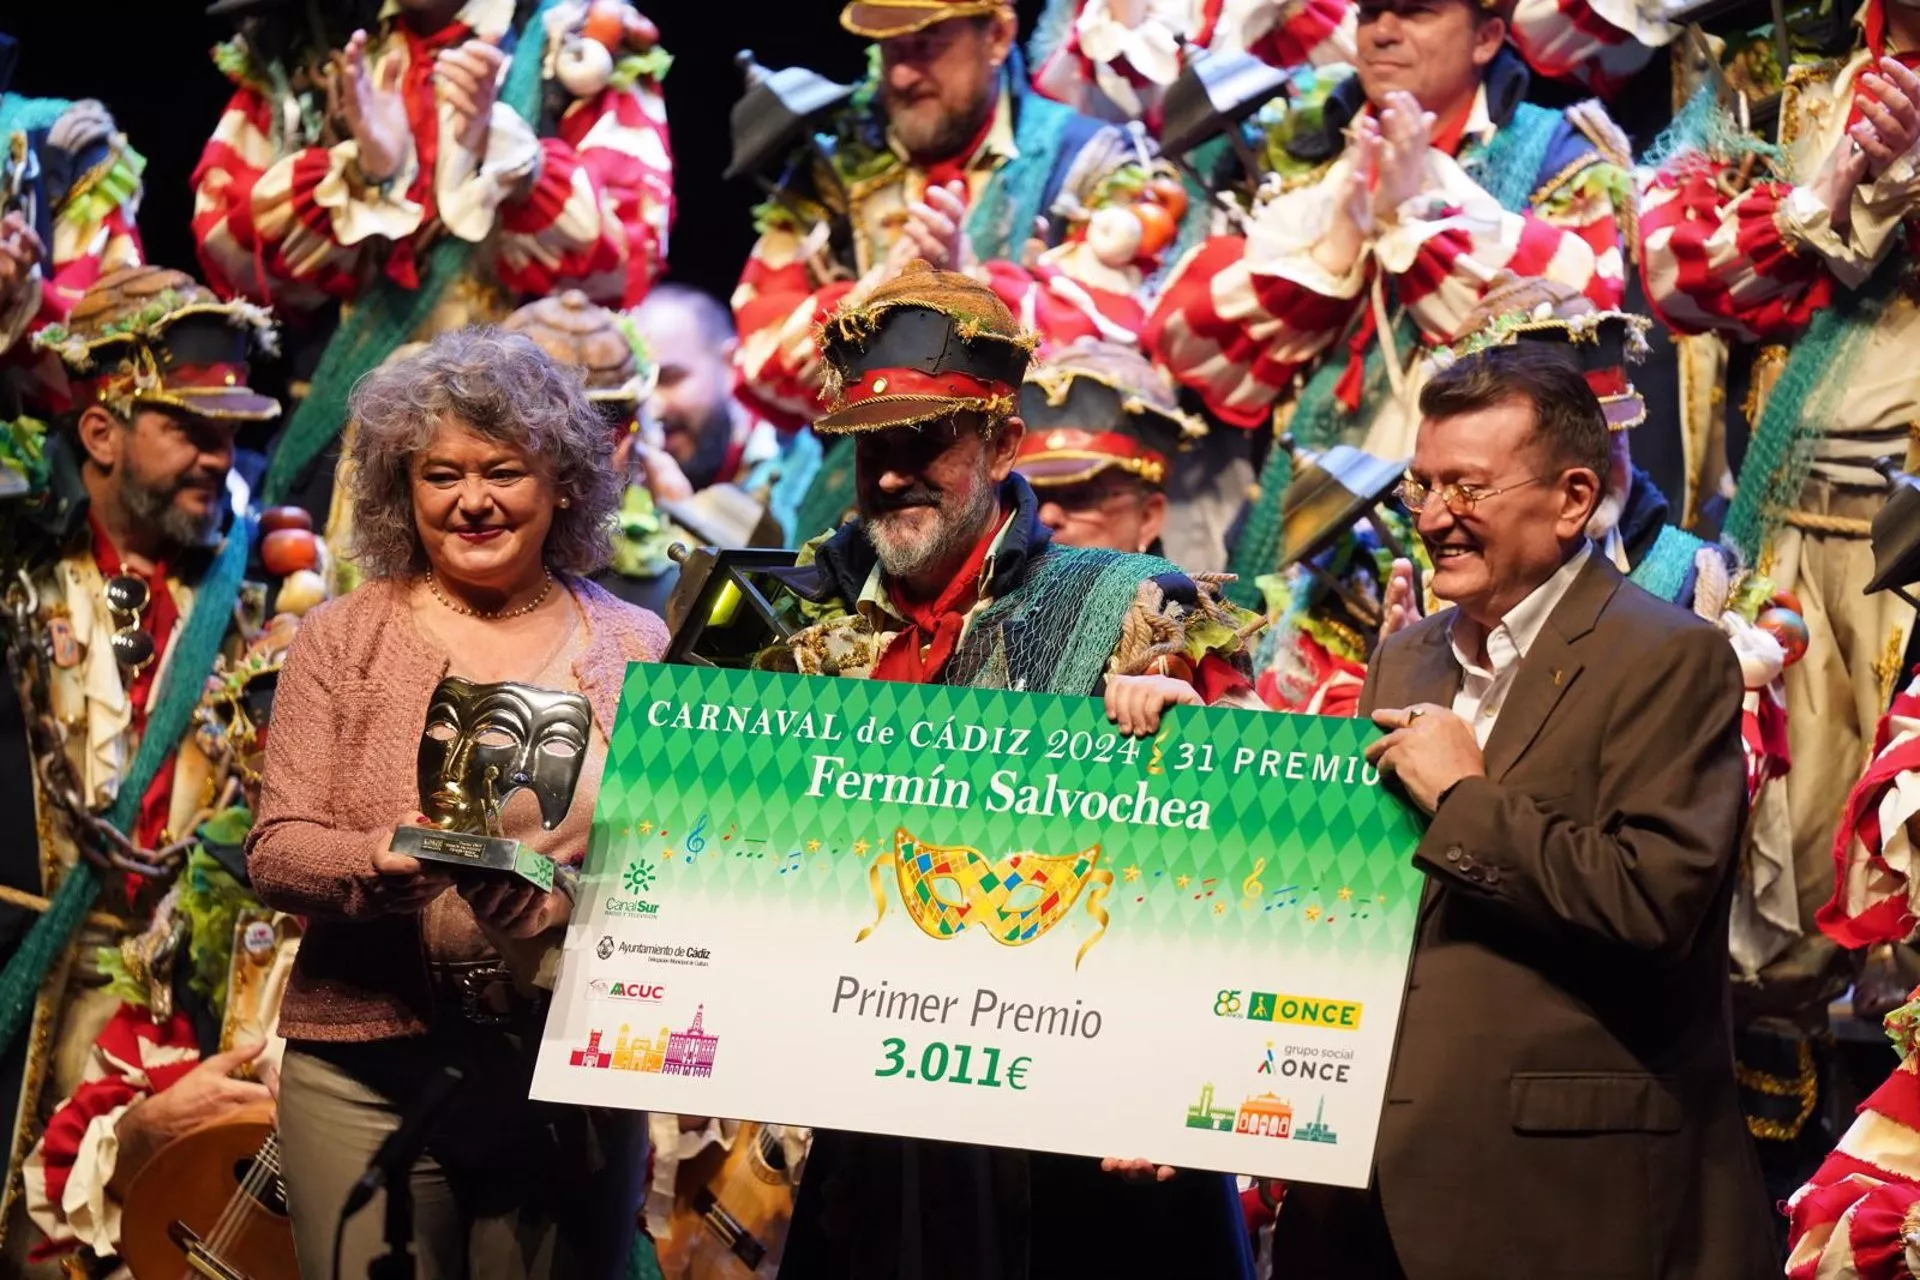 La entrega de premios se ha celebrado en el teatro La Tía Norica